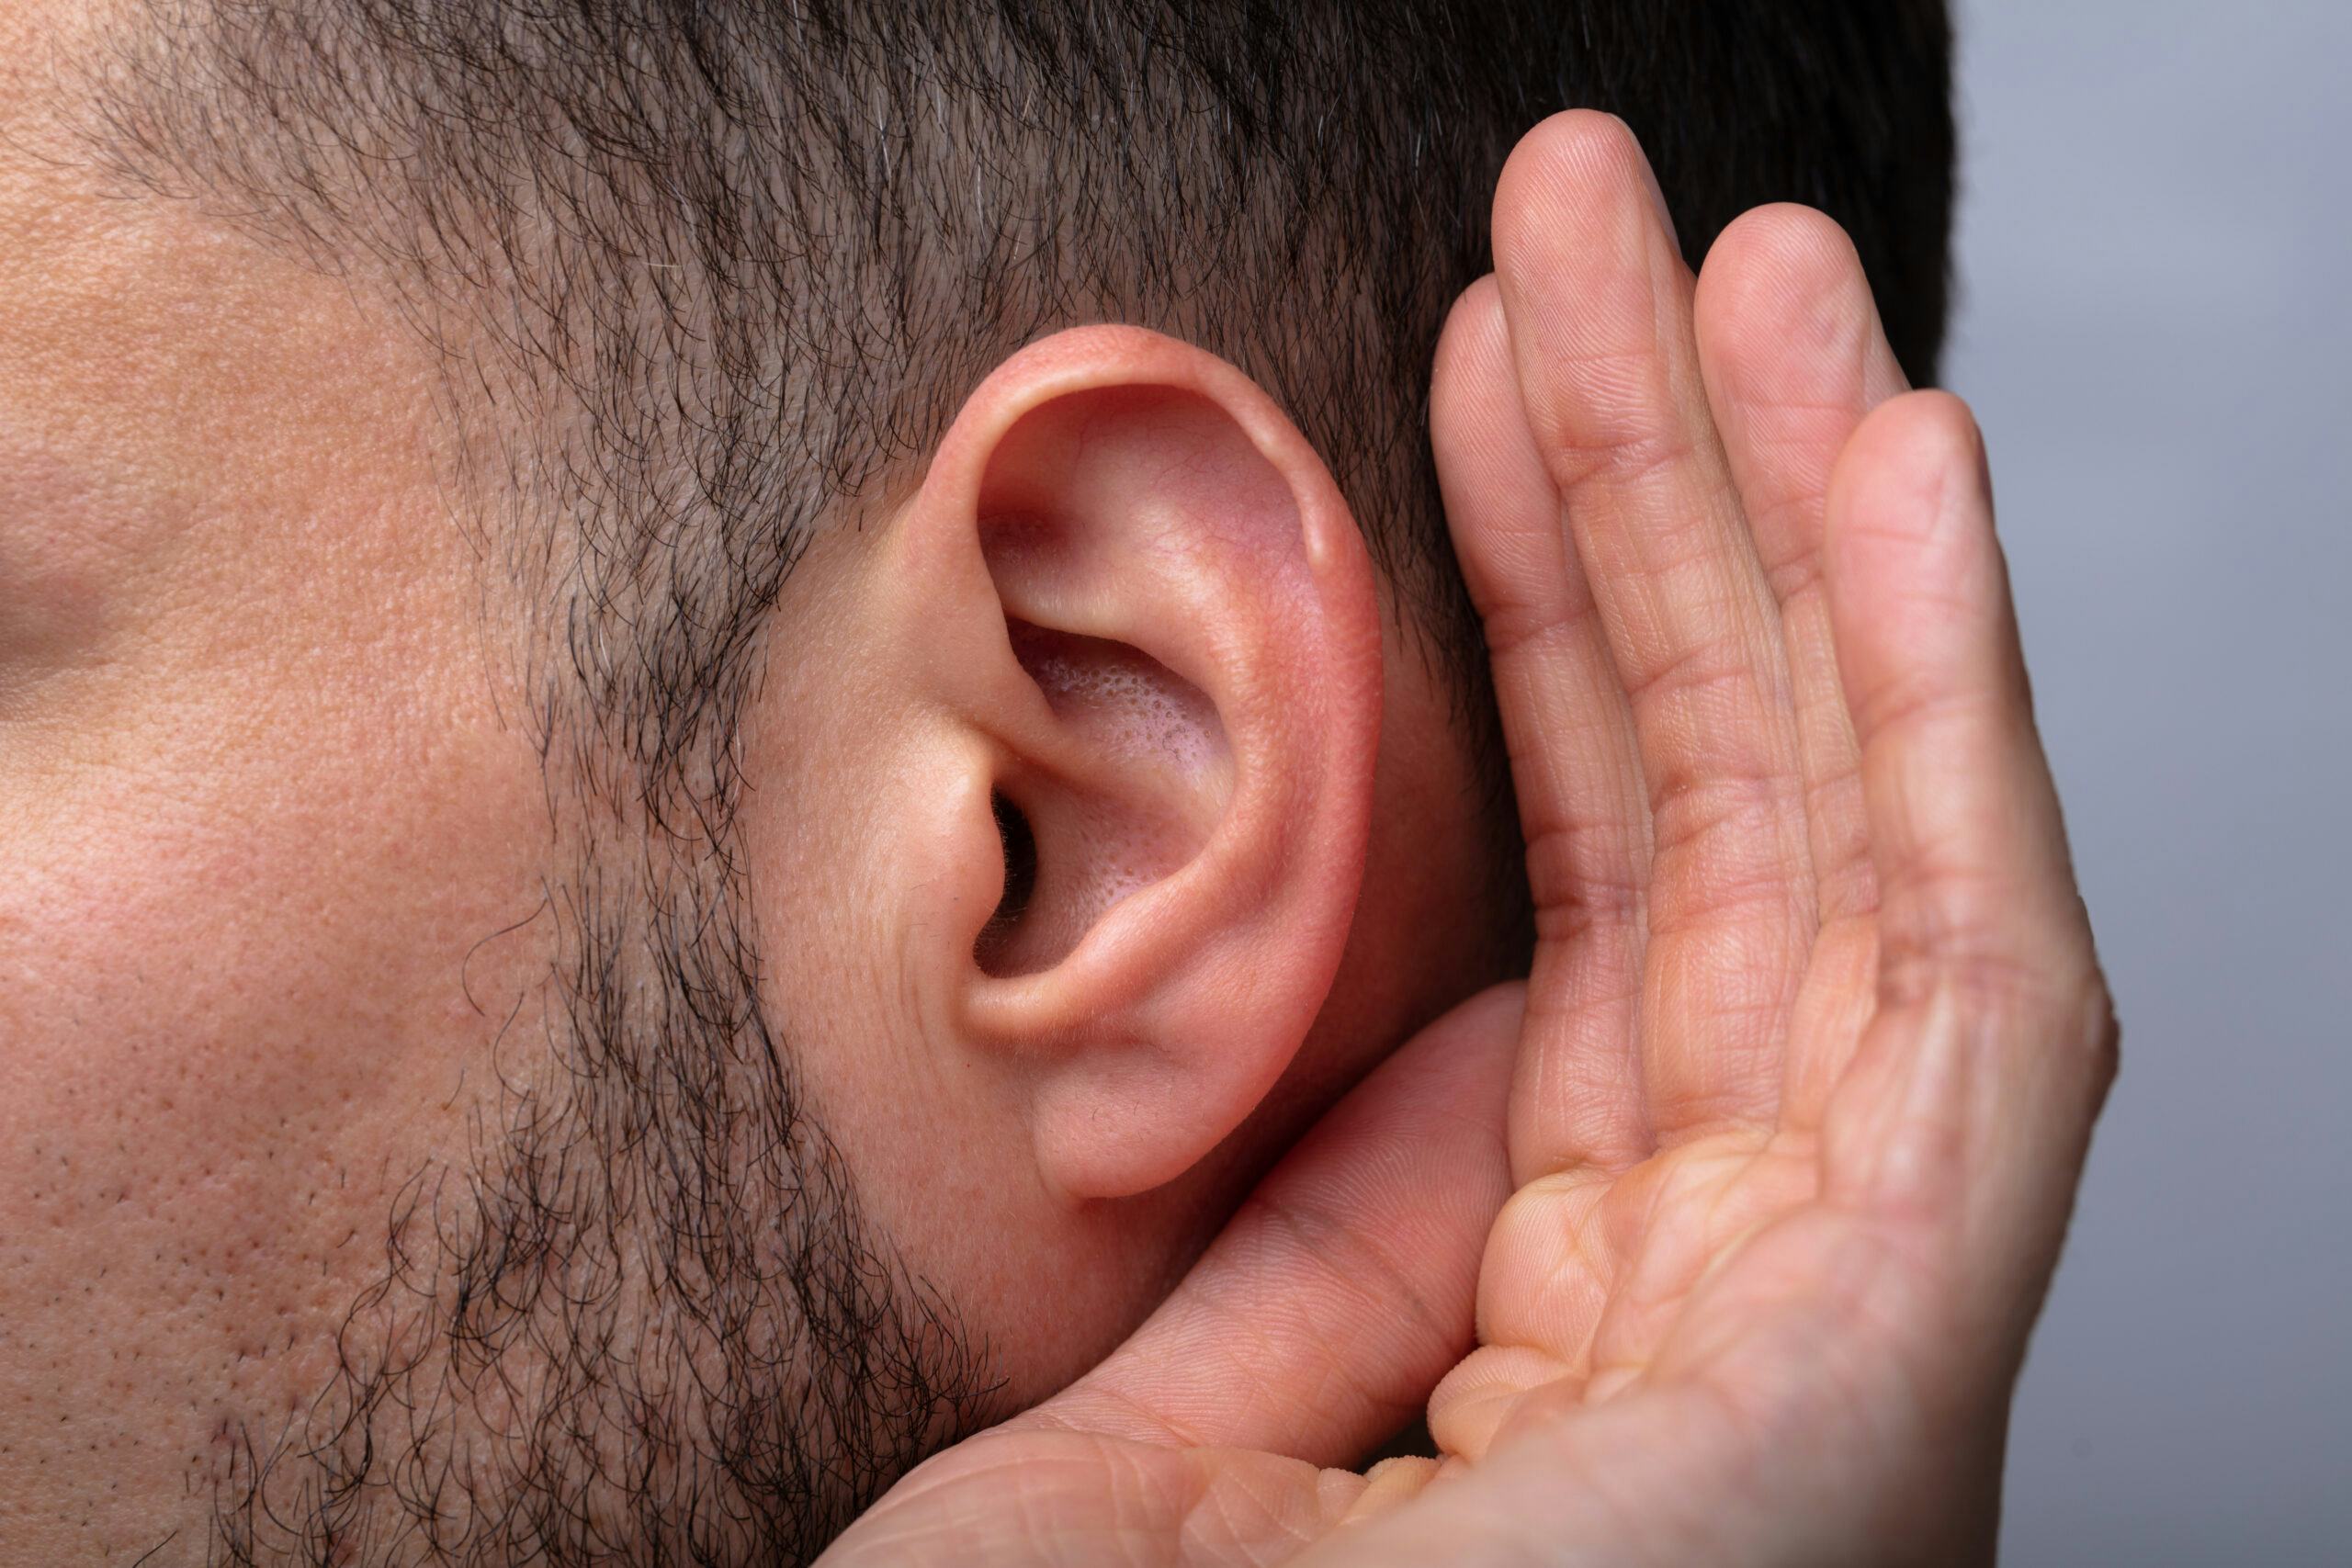 Gezondheidsraad: 'Muziek in horeca moet 3 decibel zachter'